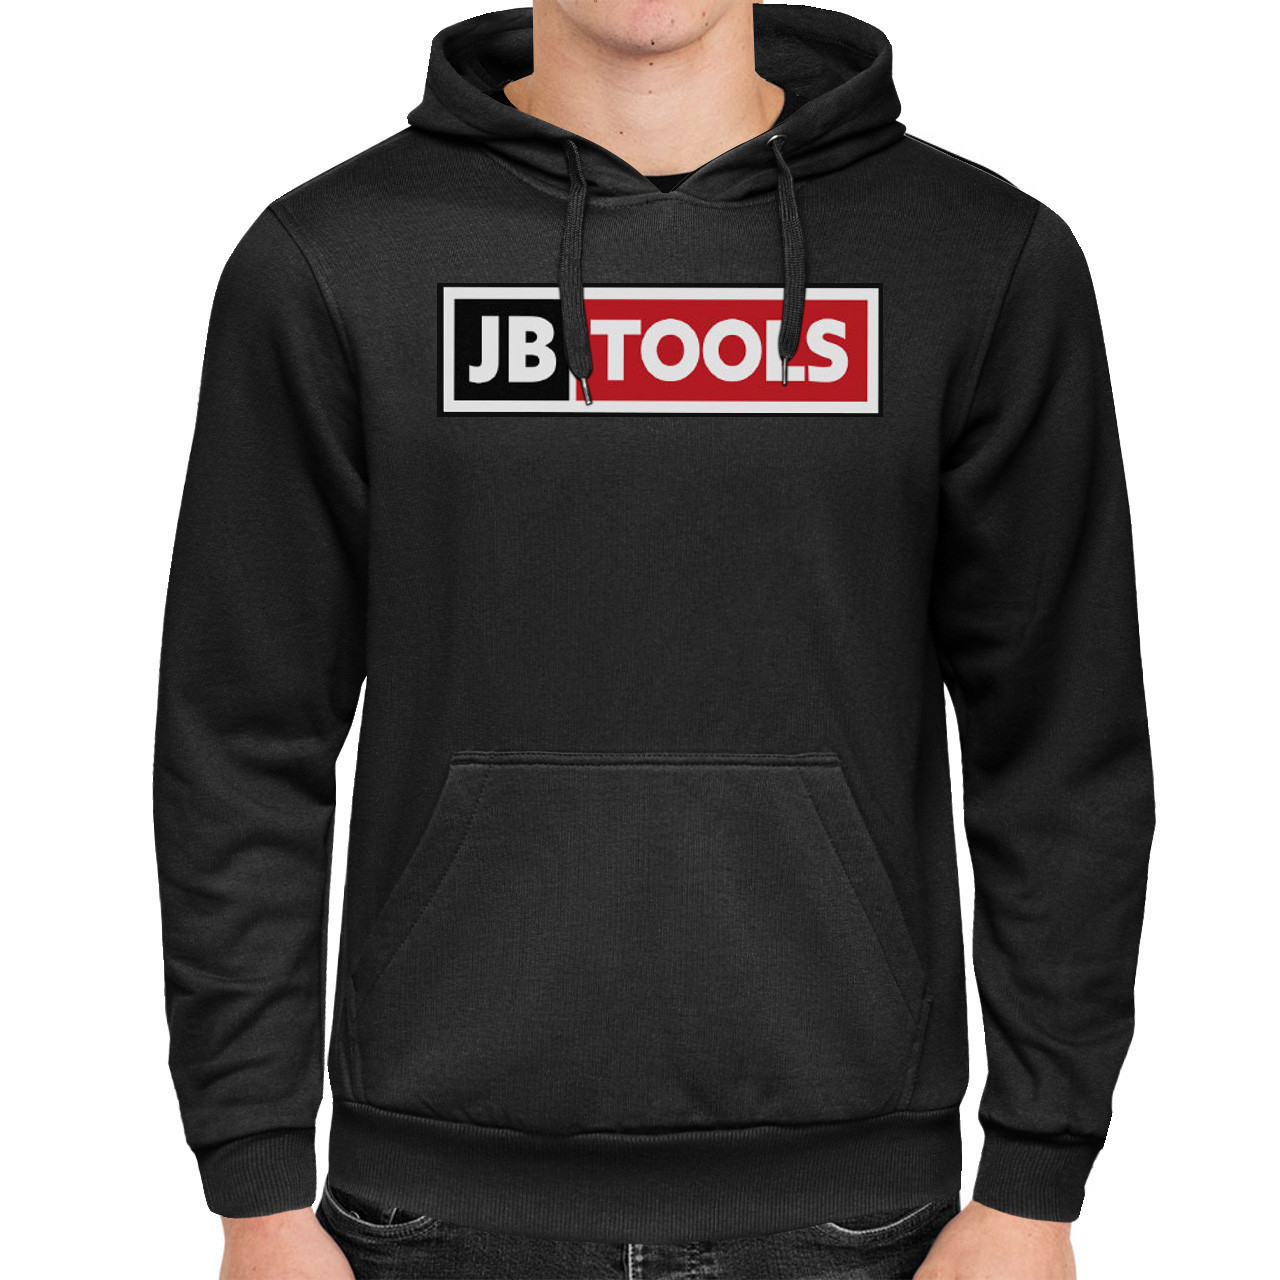 jb tools sweatshirt